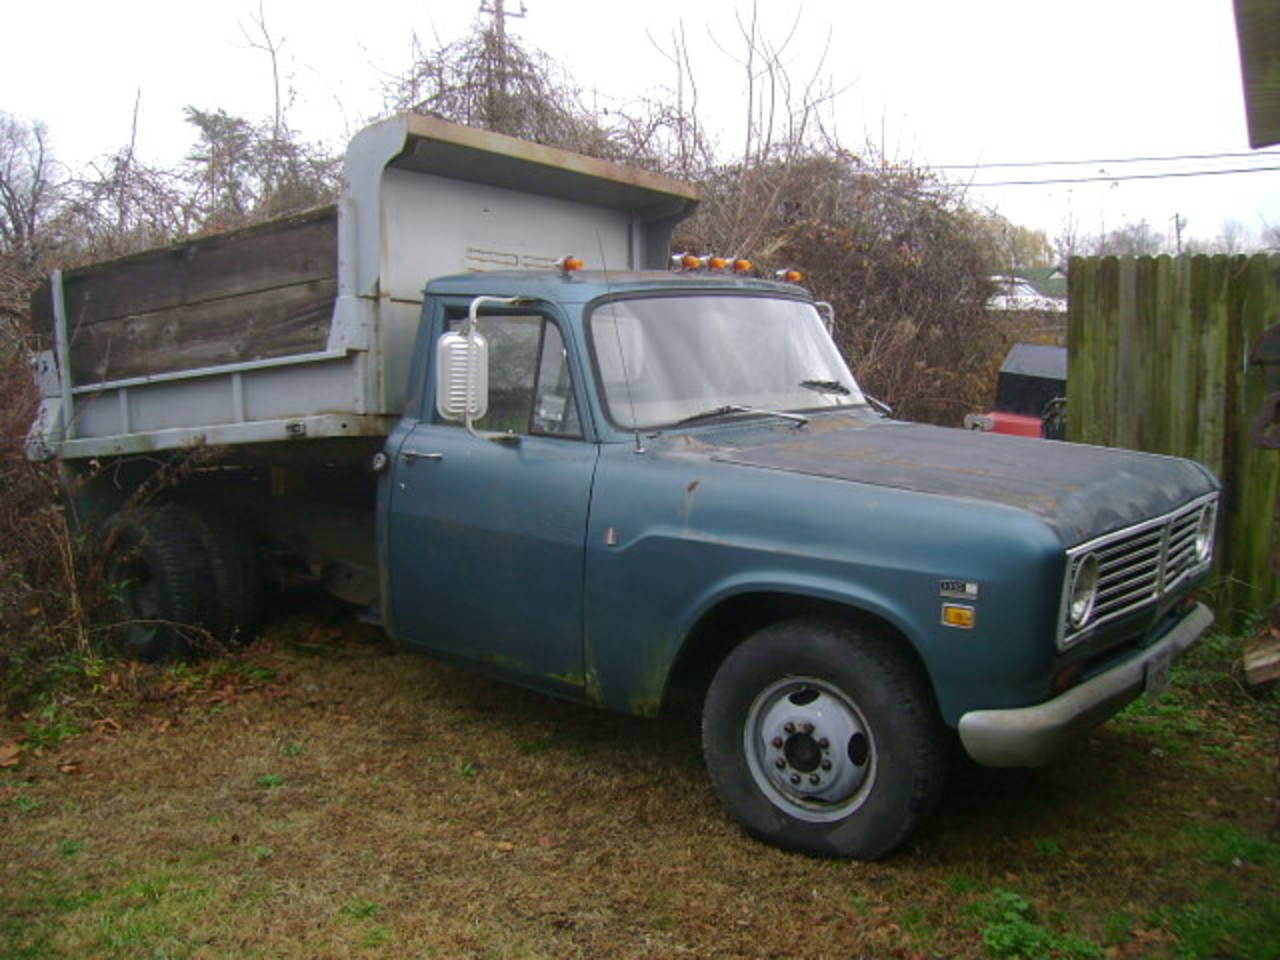 1973 International 1310 Dump Truck | Flickr - Photo Sharing!